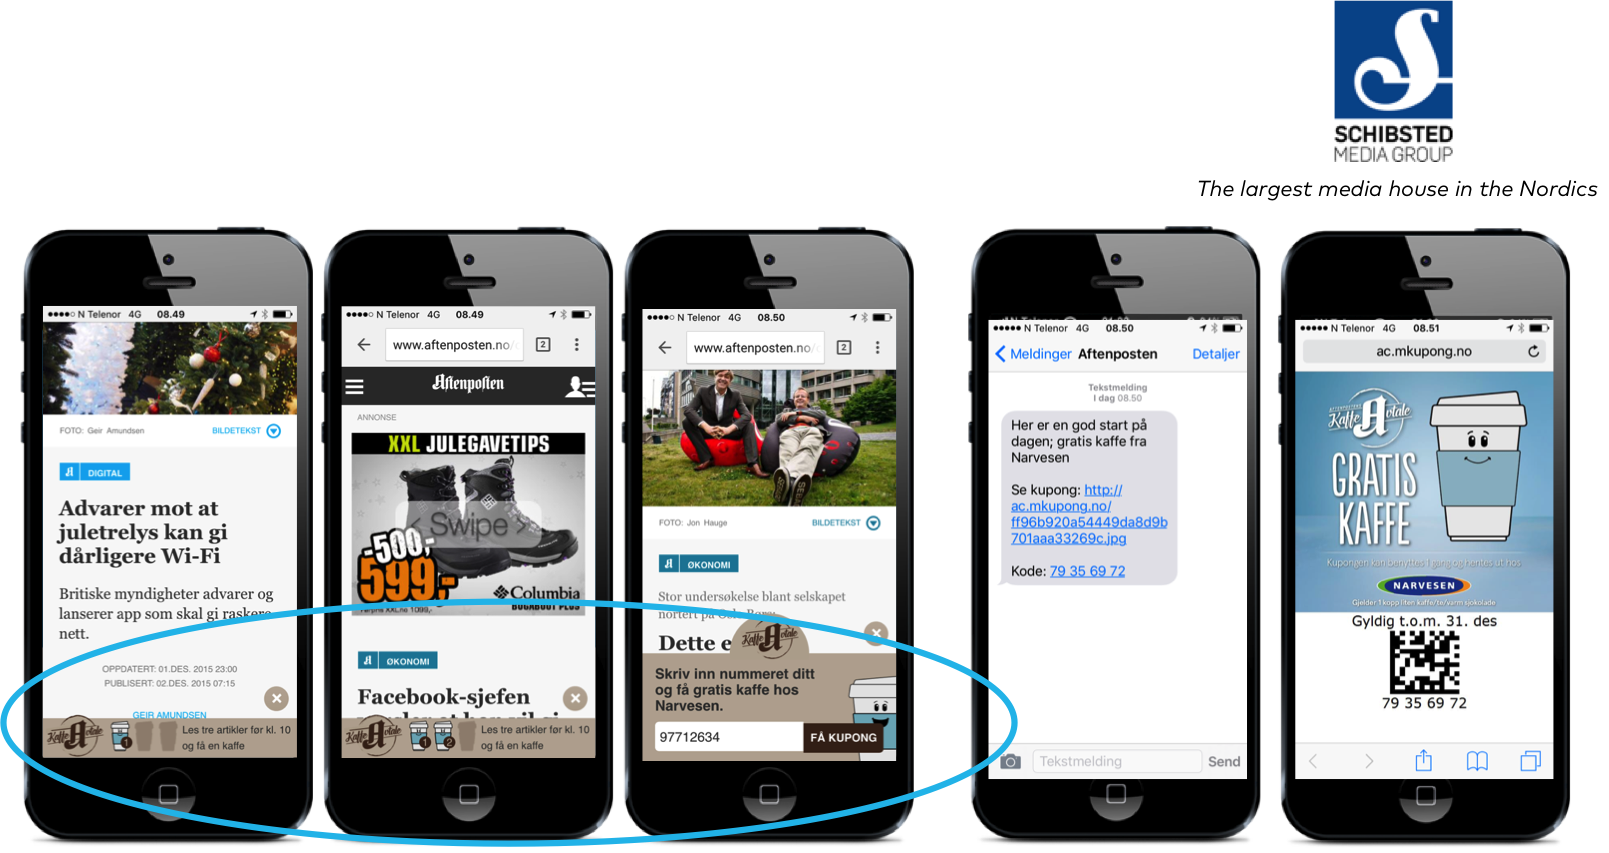 free coffee mobile voucher via SMS. Schibsted rewards desired behavior